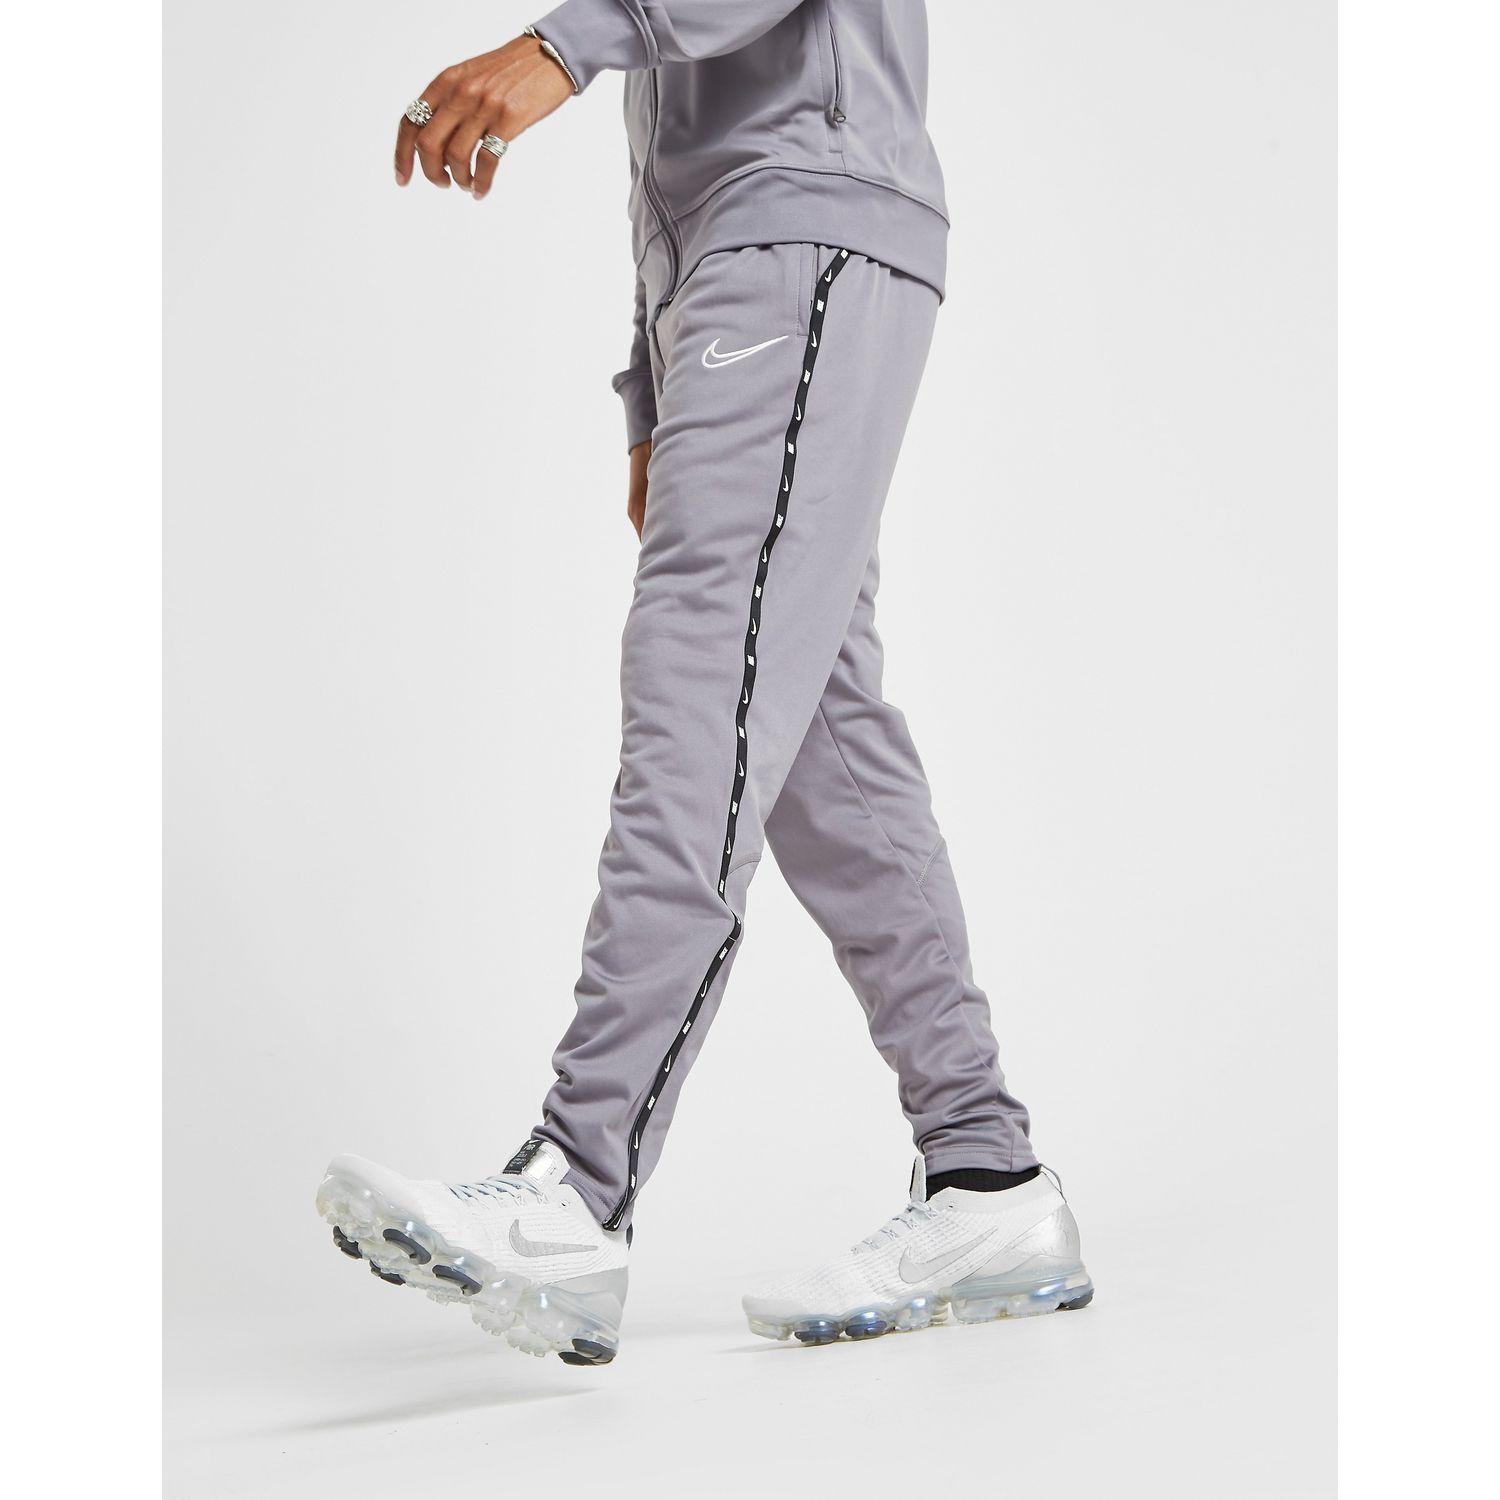 nike academy track pants grey